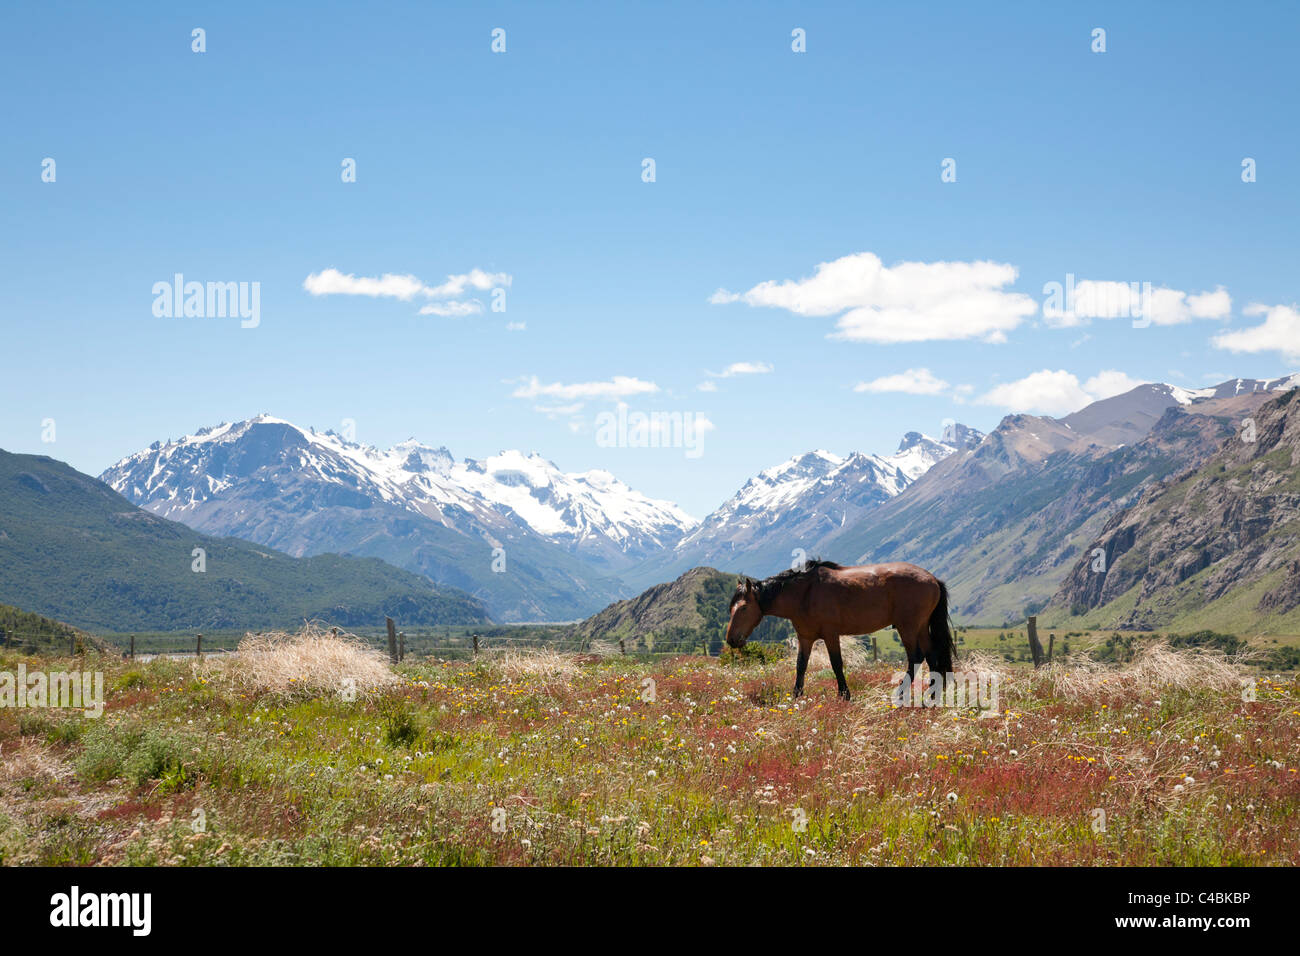 Fitz Roy massif, Parque Nacional Los Glaciares, Patagonia, Argentina Stock Photo